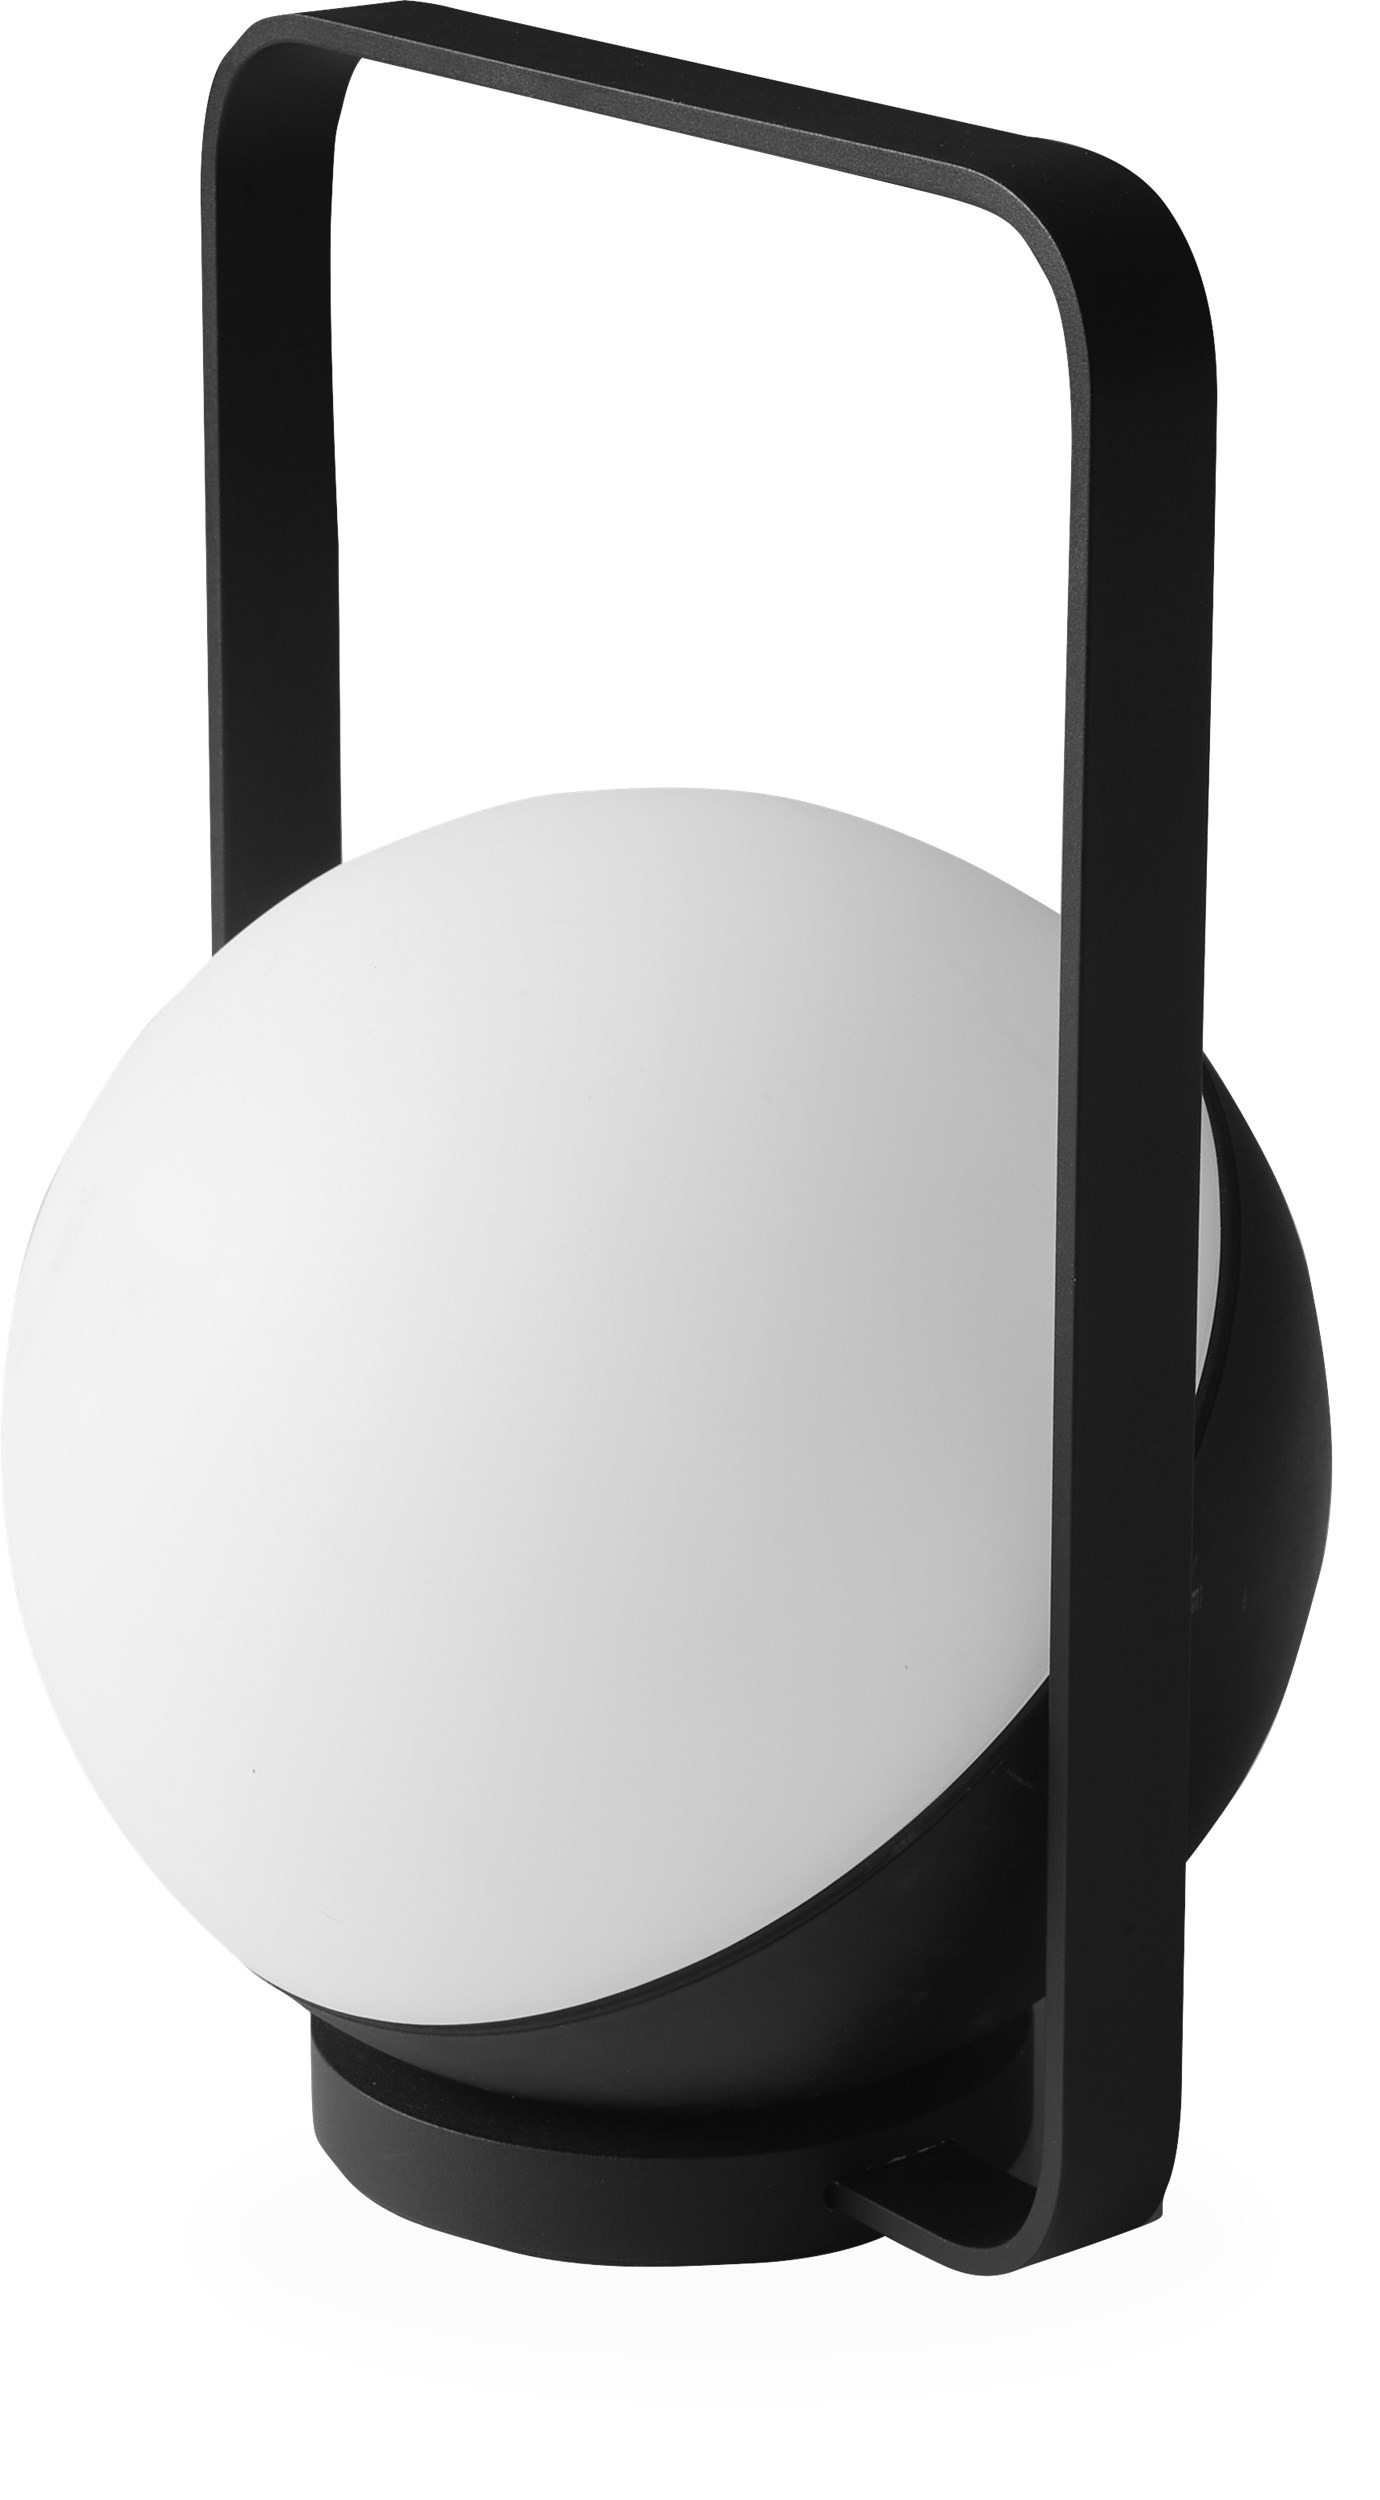 Dione Udendørslampe 18 x 28,4 x 19,4 cm - Skærm i hvid/sort plast og vendbart håndtag i mat sort metal